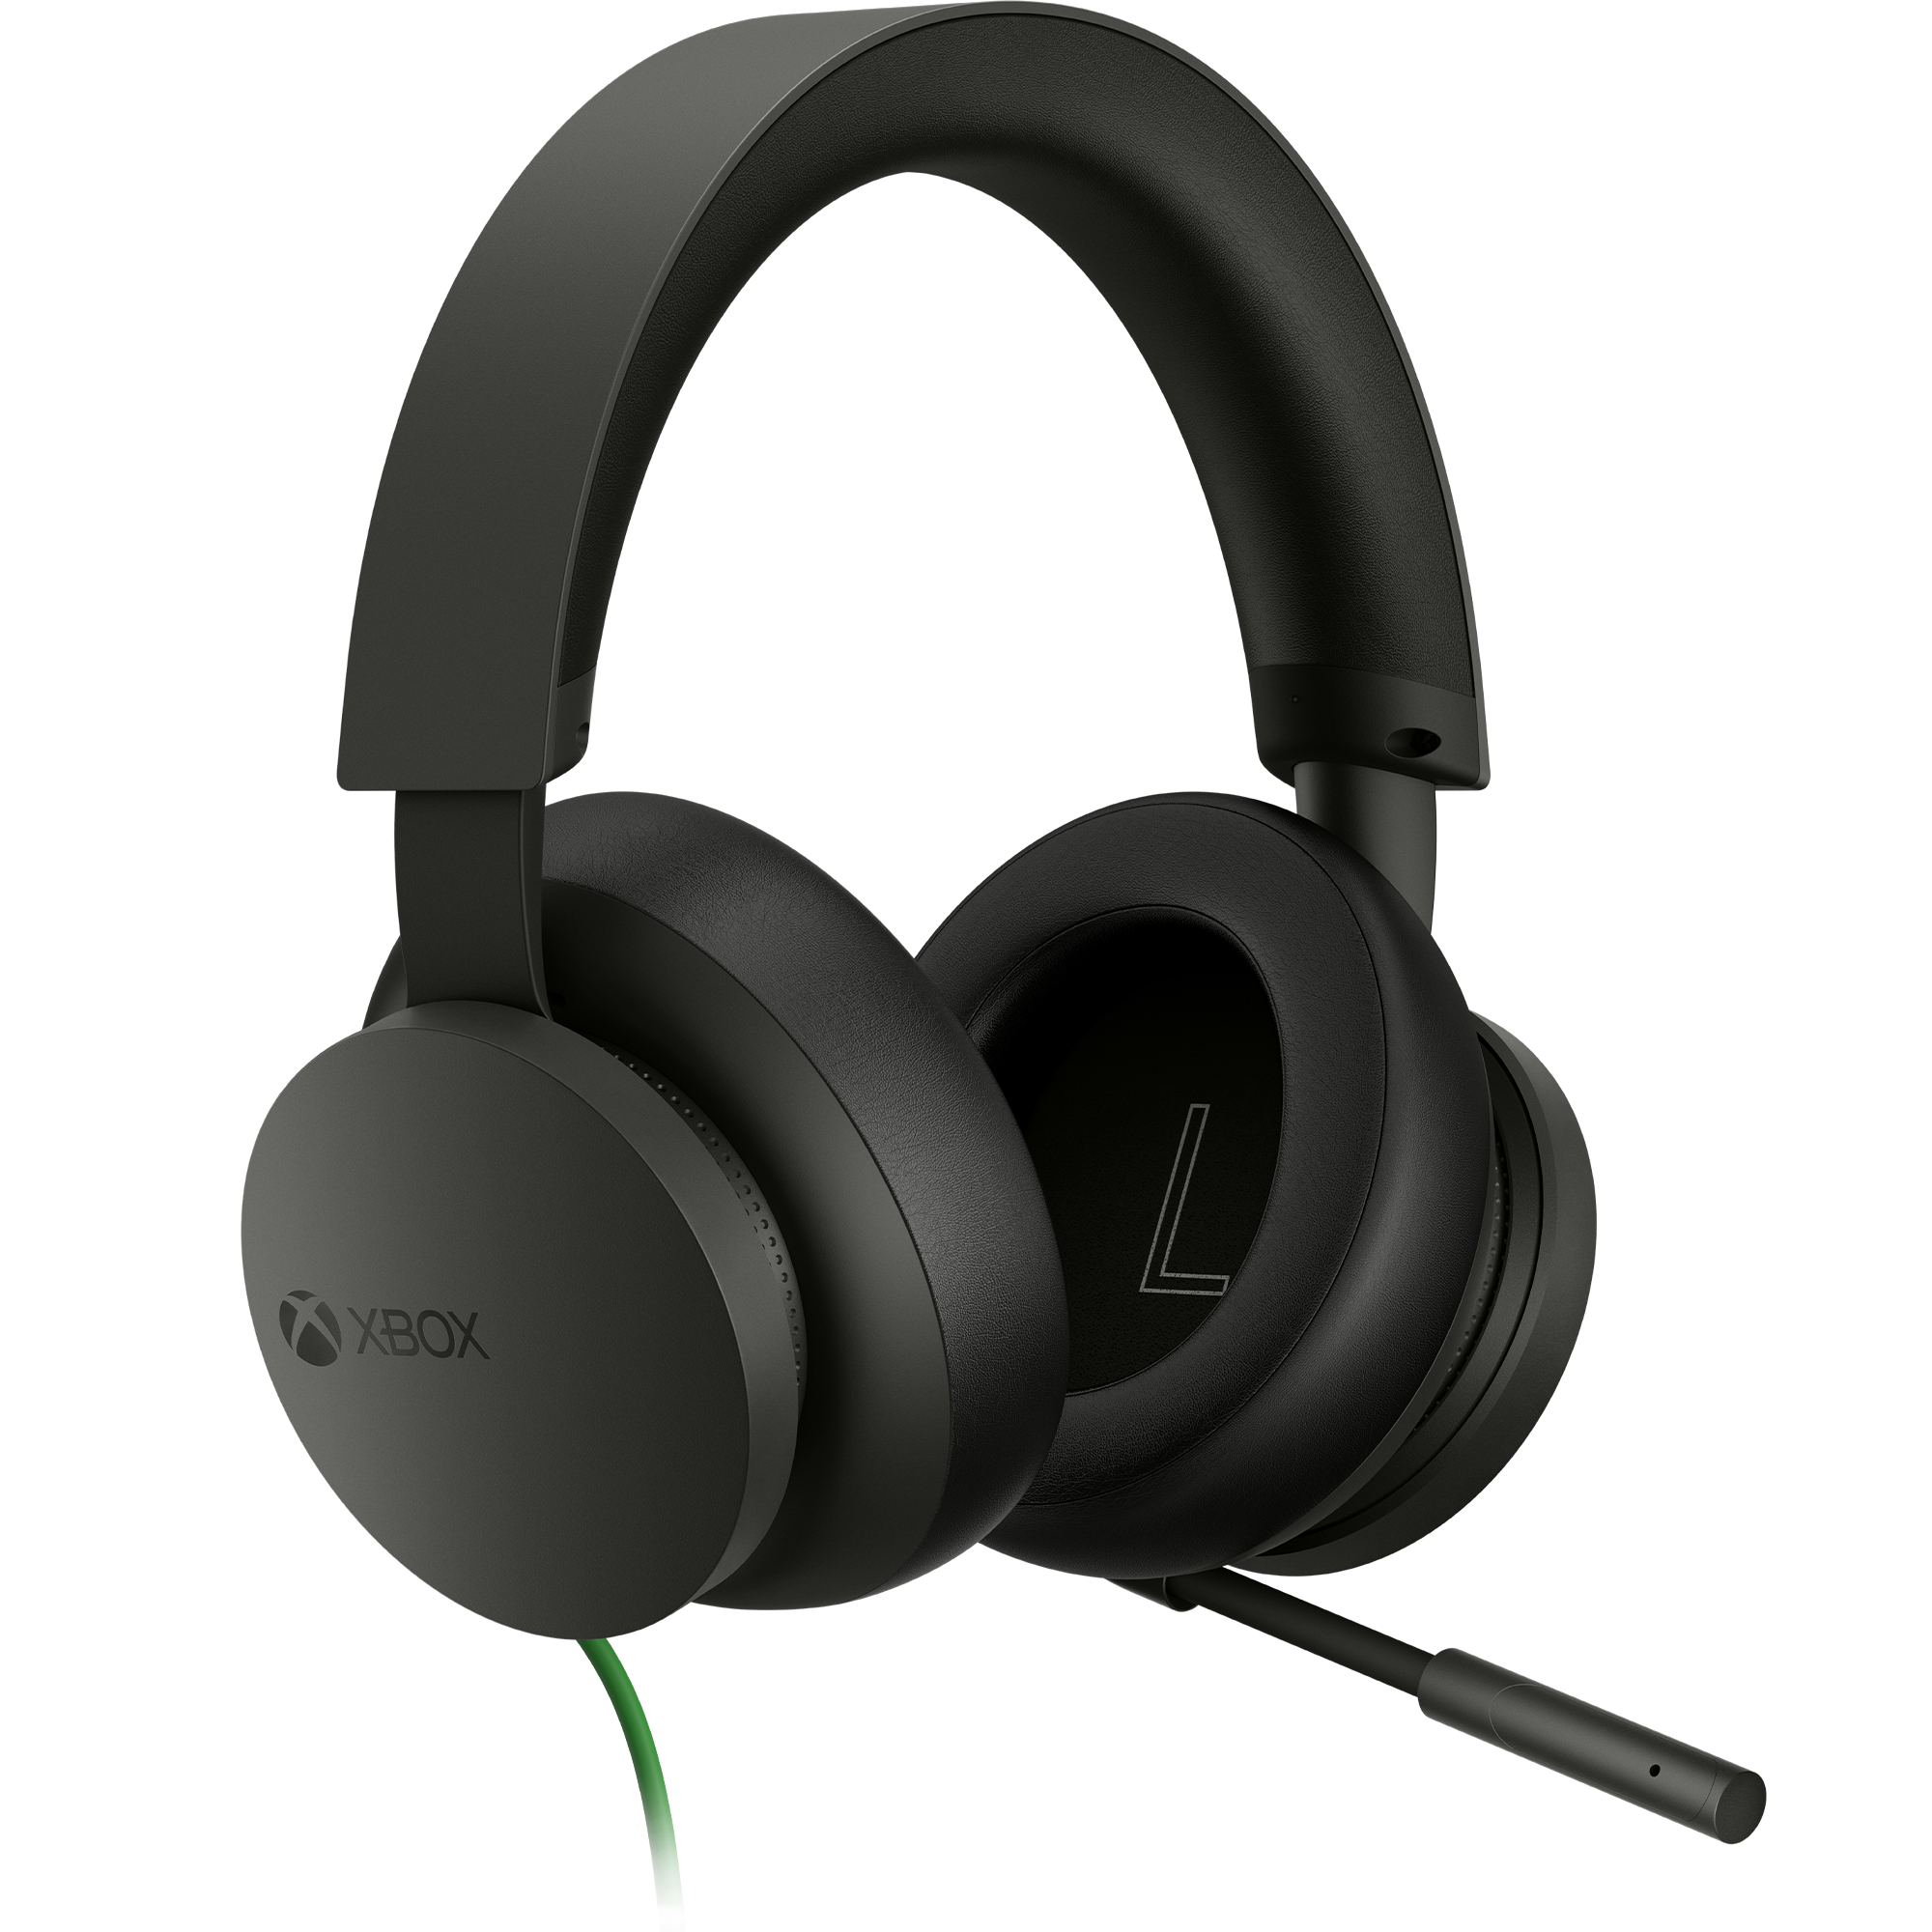 Skal Tak for din hjælp Terapi Xbox Stereo Headset